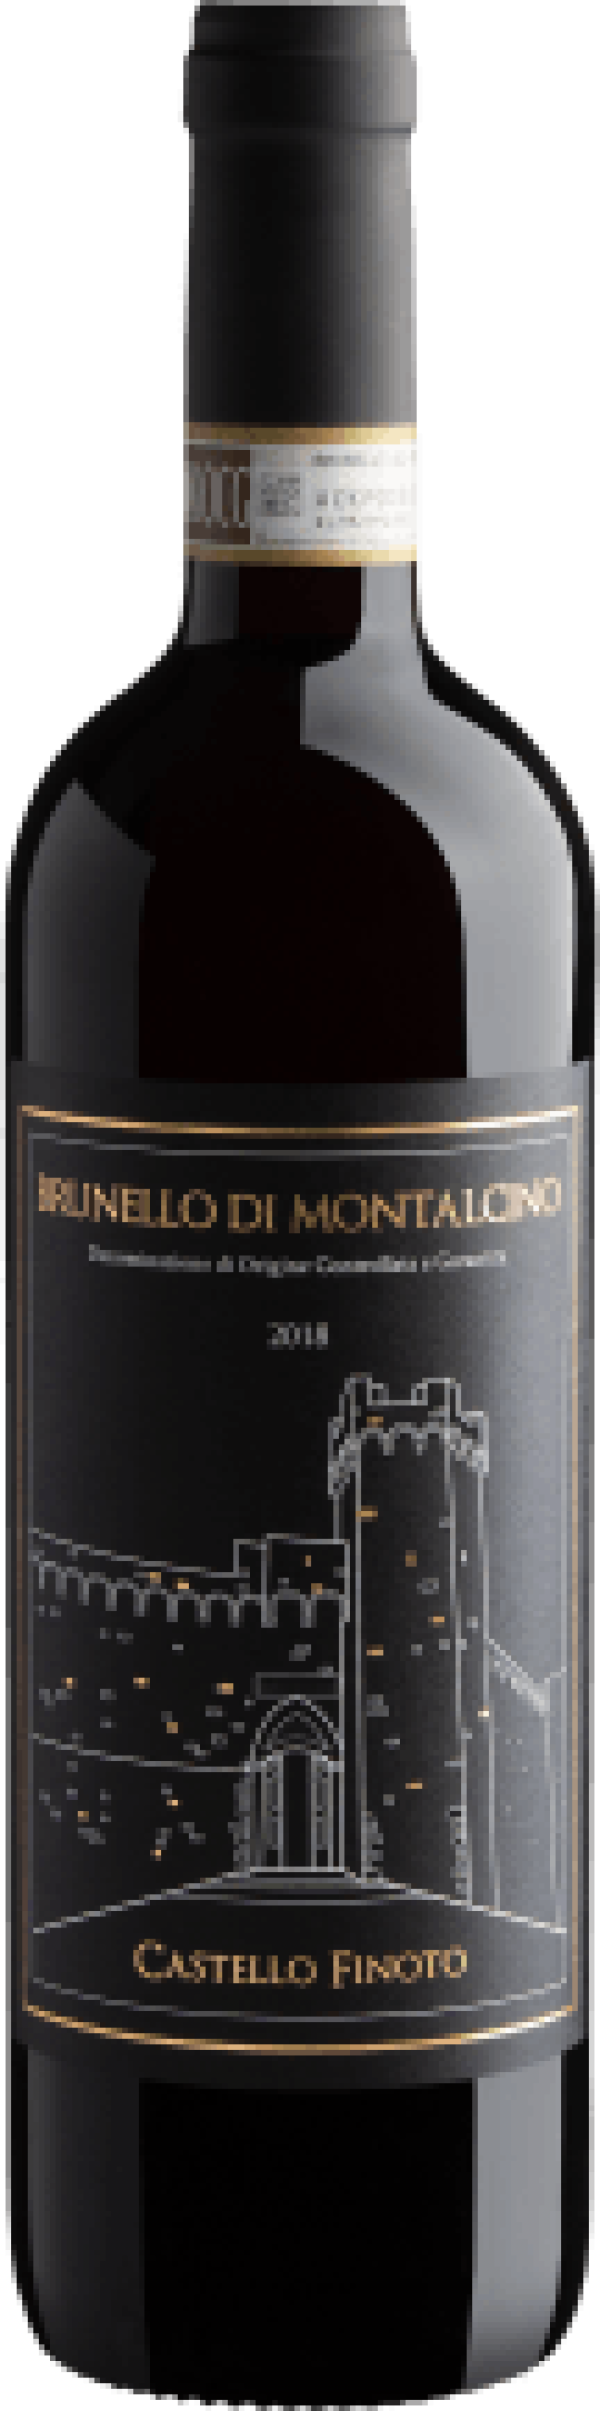 Castello Finoto Brunello di Montalcino DOCG 2018